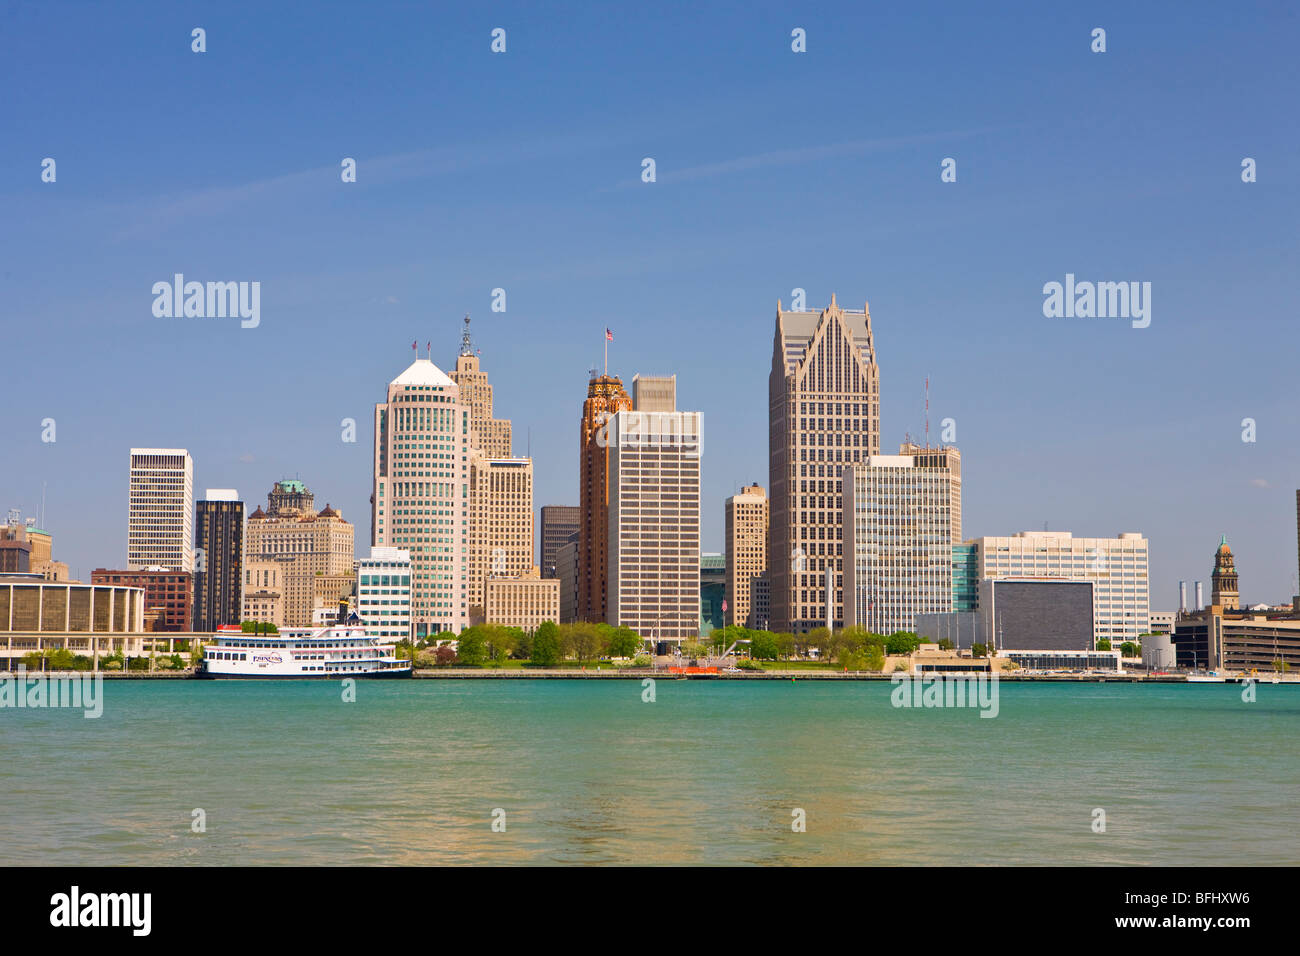 Skyline der Stadt von Detroit am Detroit River in Michigan, USA, gesehen von der Stadt Windsor, Ontario, Kanada Stockfoto